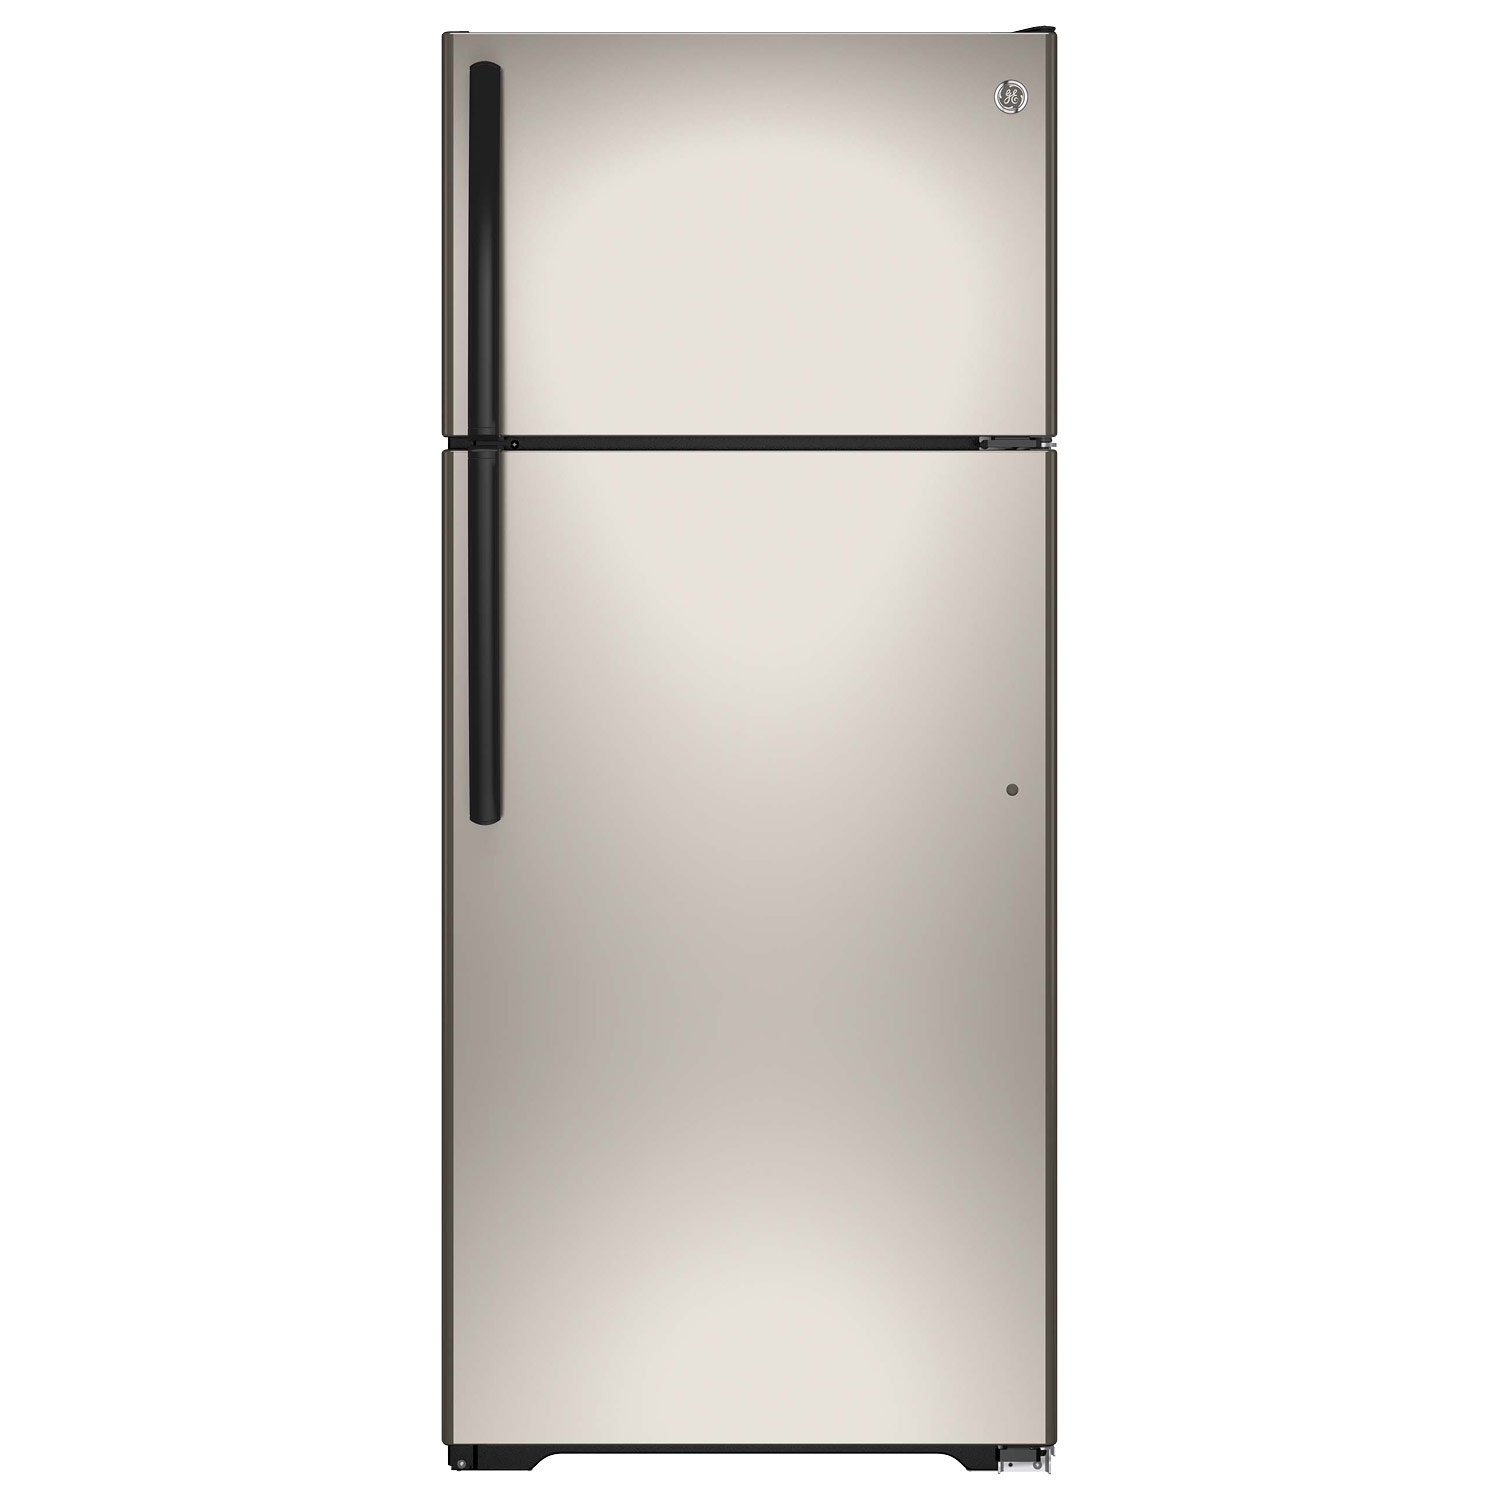 Buy GE Refrigerator GTE18CCHSA